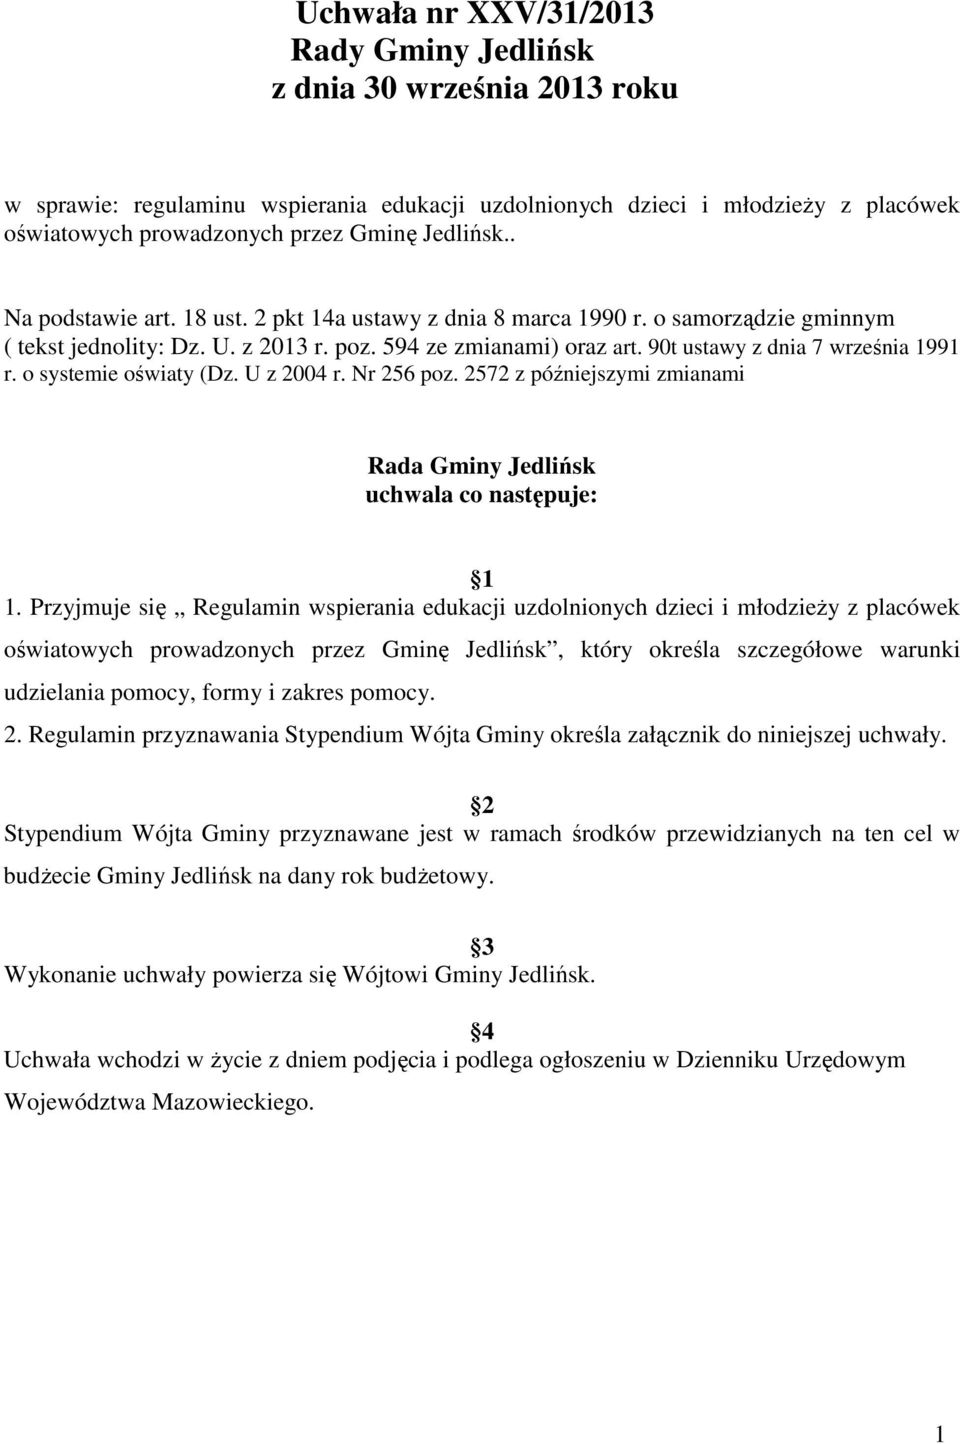 90t ustawy z dnia 7 września 1991 r. o systemie oświaty (Dz. U z 2004 r. Nr 256 poz. 2572 z późniejszymi zmianami Rada Gminy Jedlińsk uchwala co następuje: 1 1.